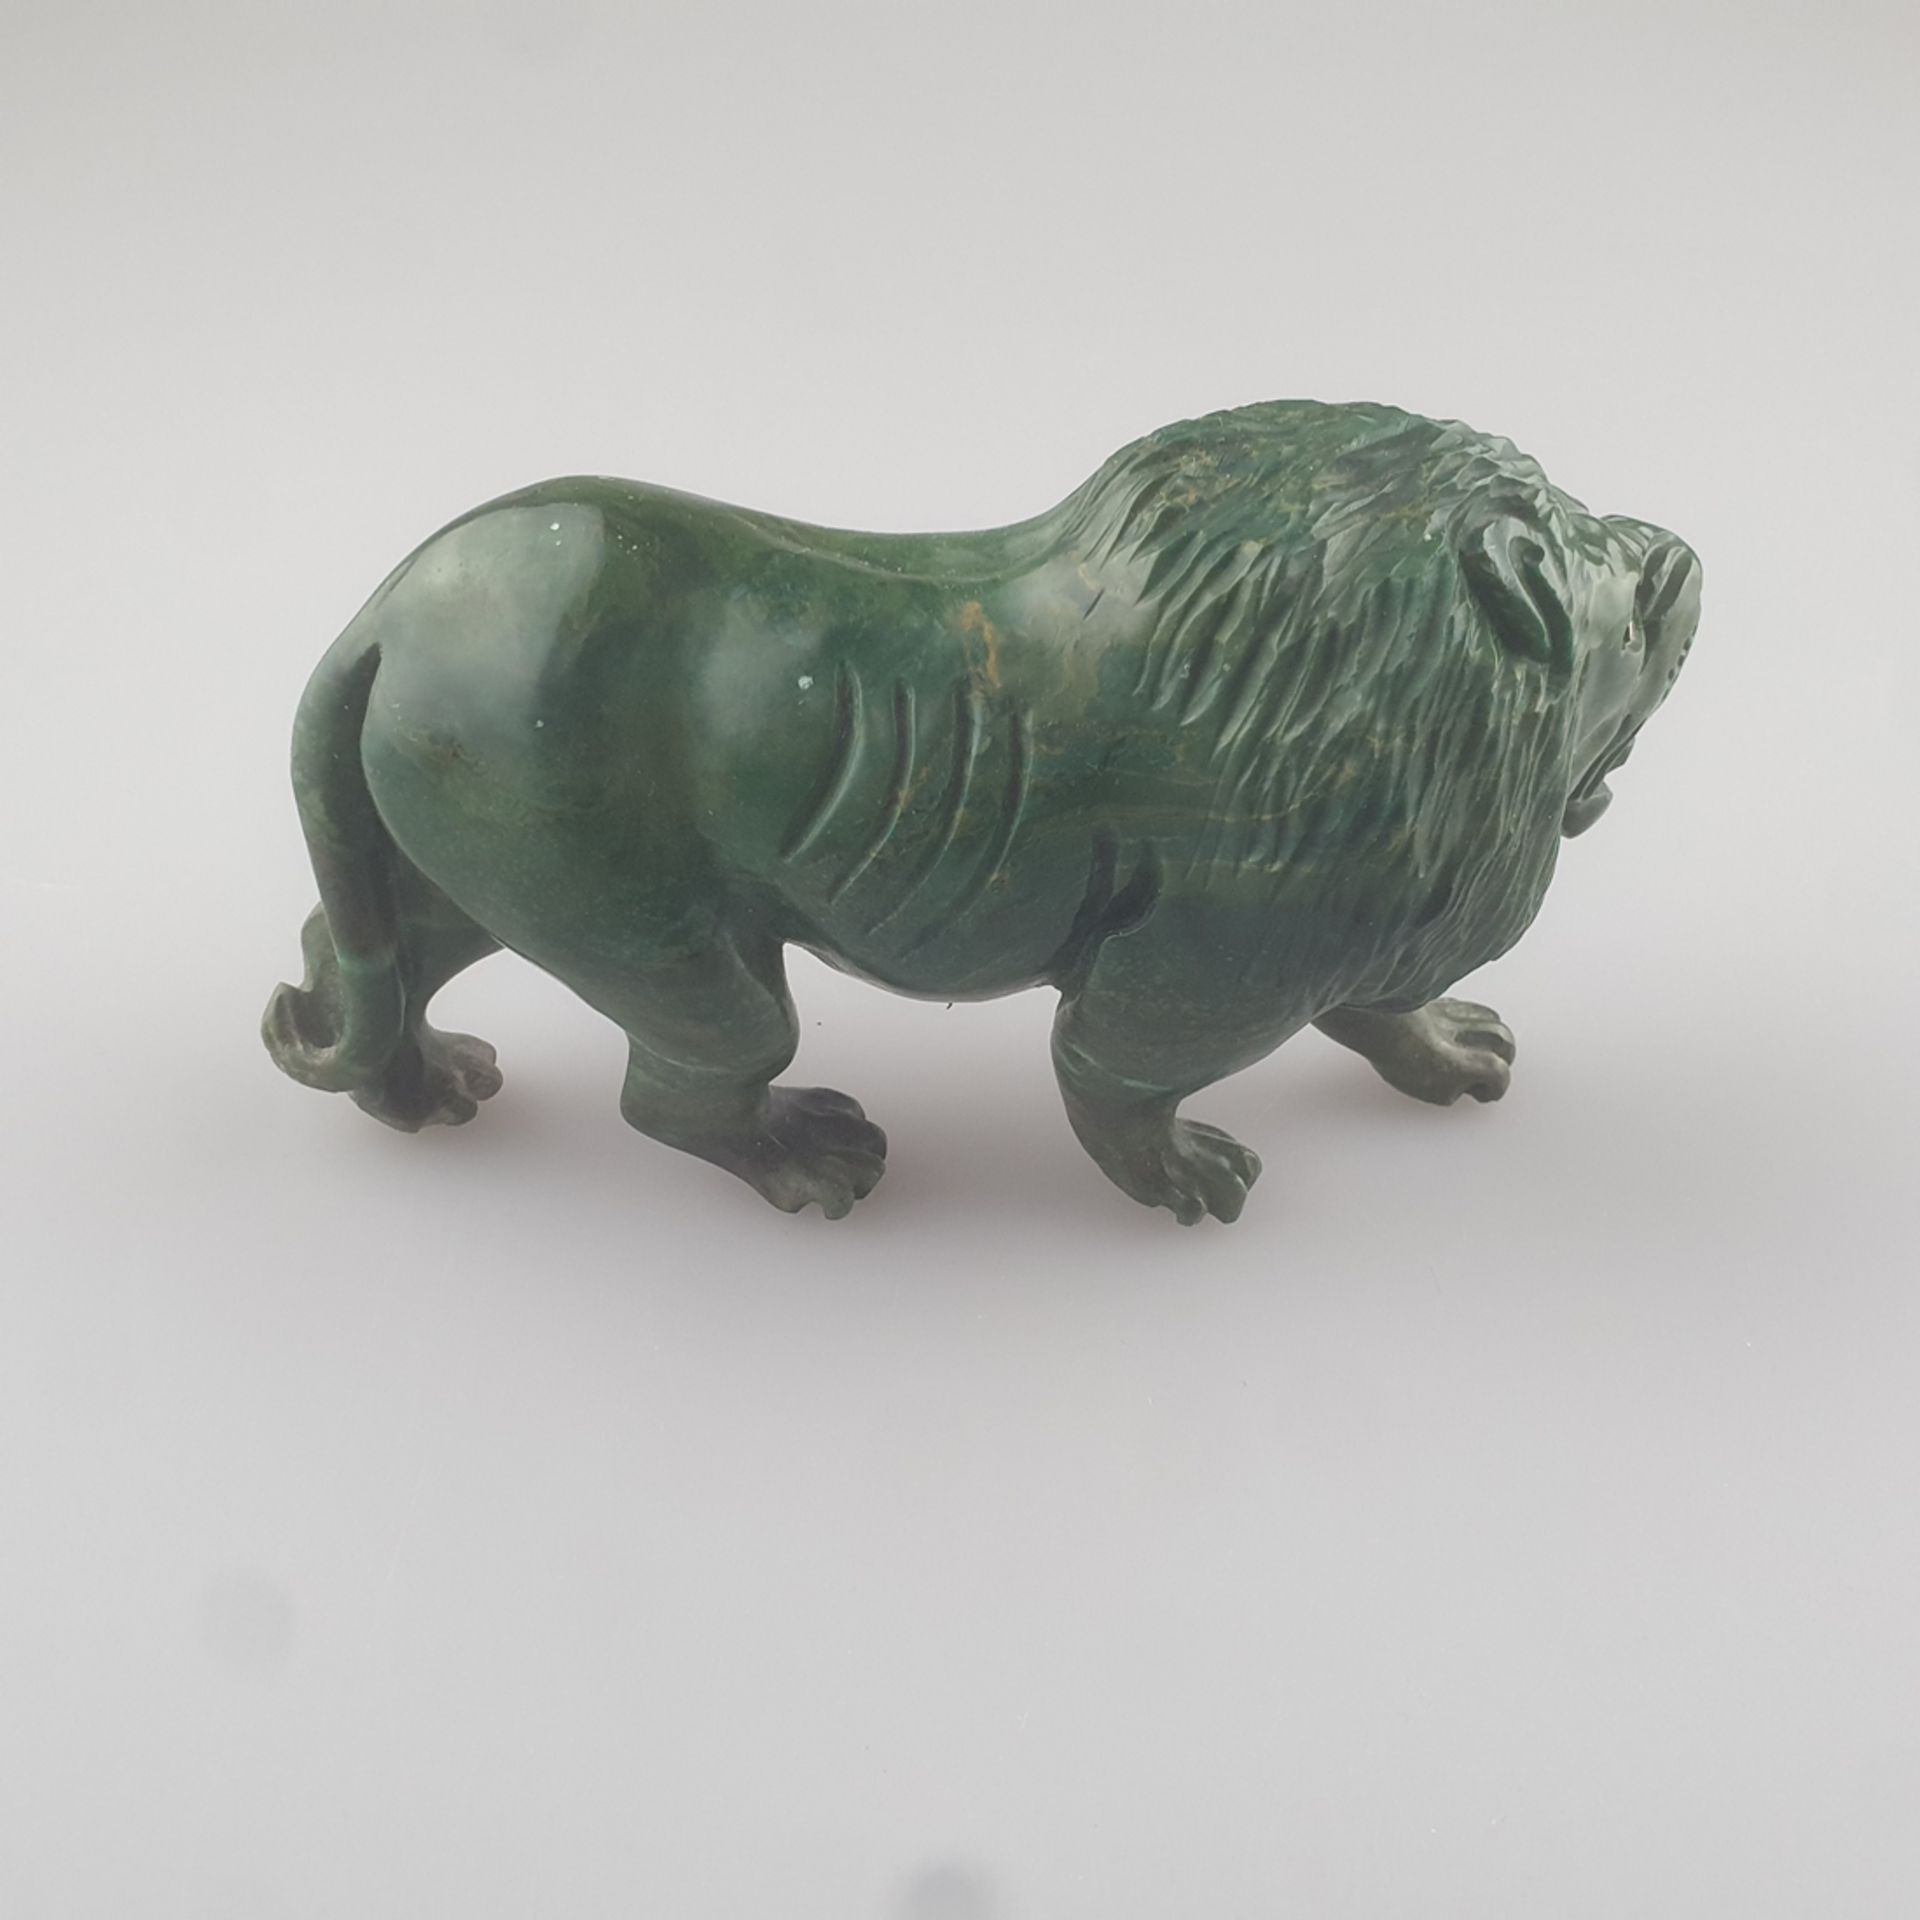 Schreitender Löwe - grüner Stein vollrund geschnitzt, wohl Chrysokoll, mit aufgerissenem Maul und ü - Image 2 of 4